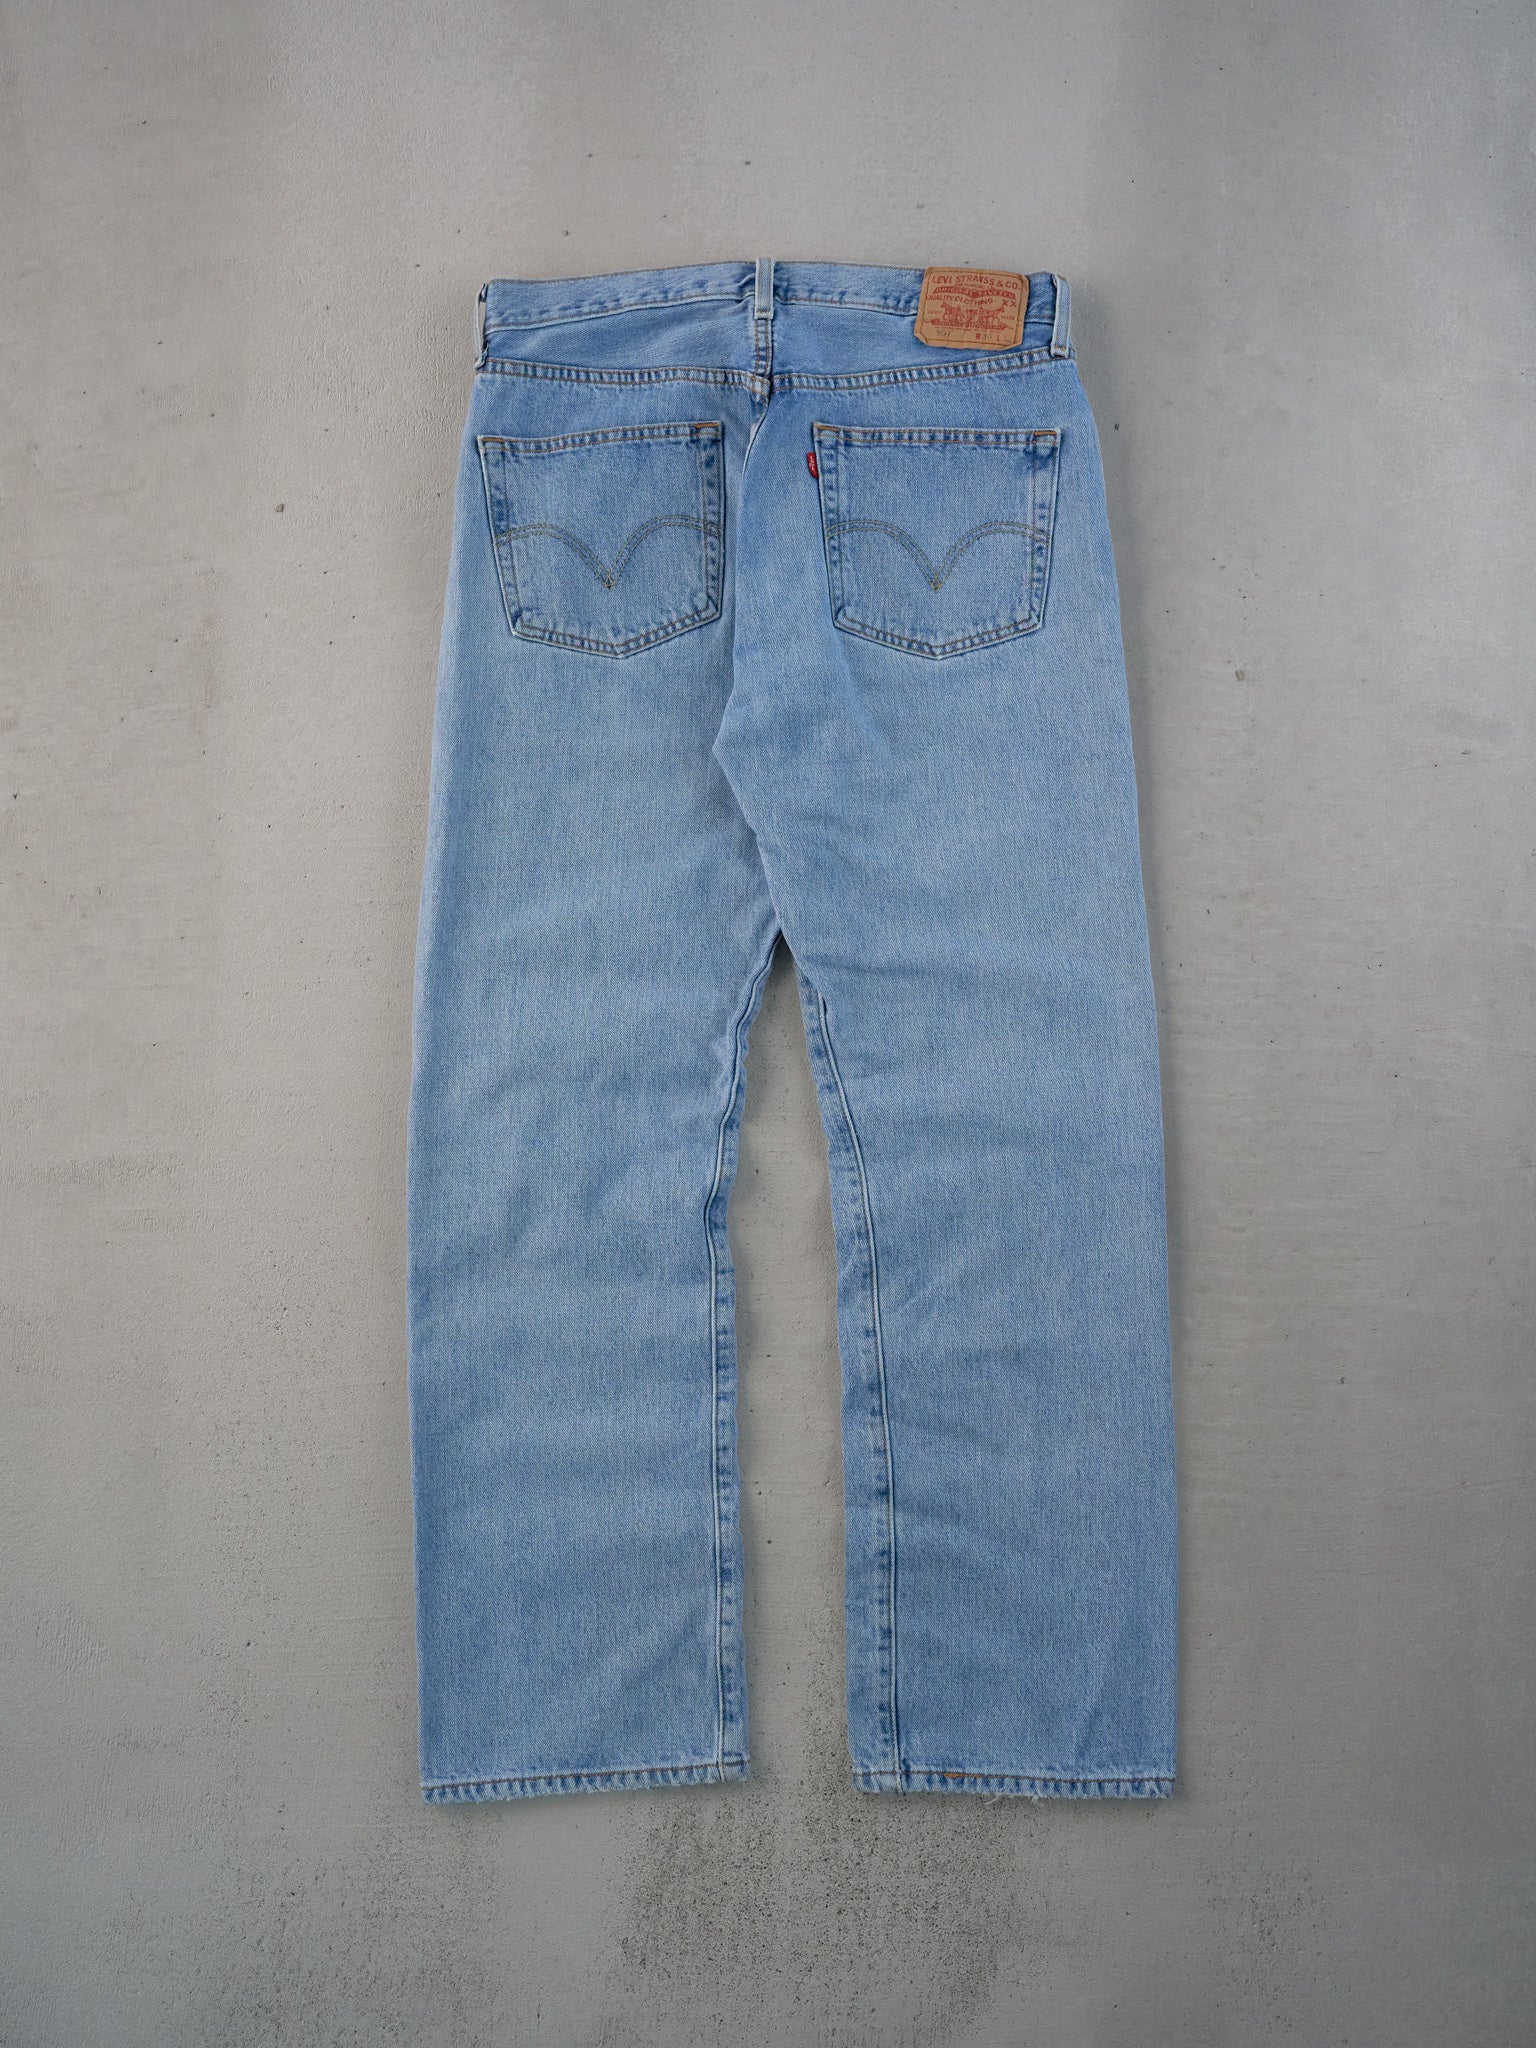 Vintage 90s Blue Levi's 501 Denim Jeans (33x31)